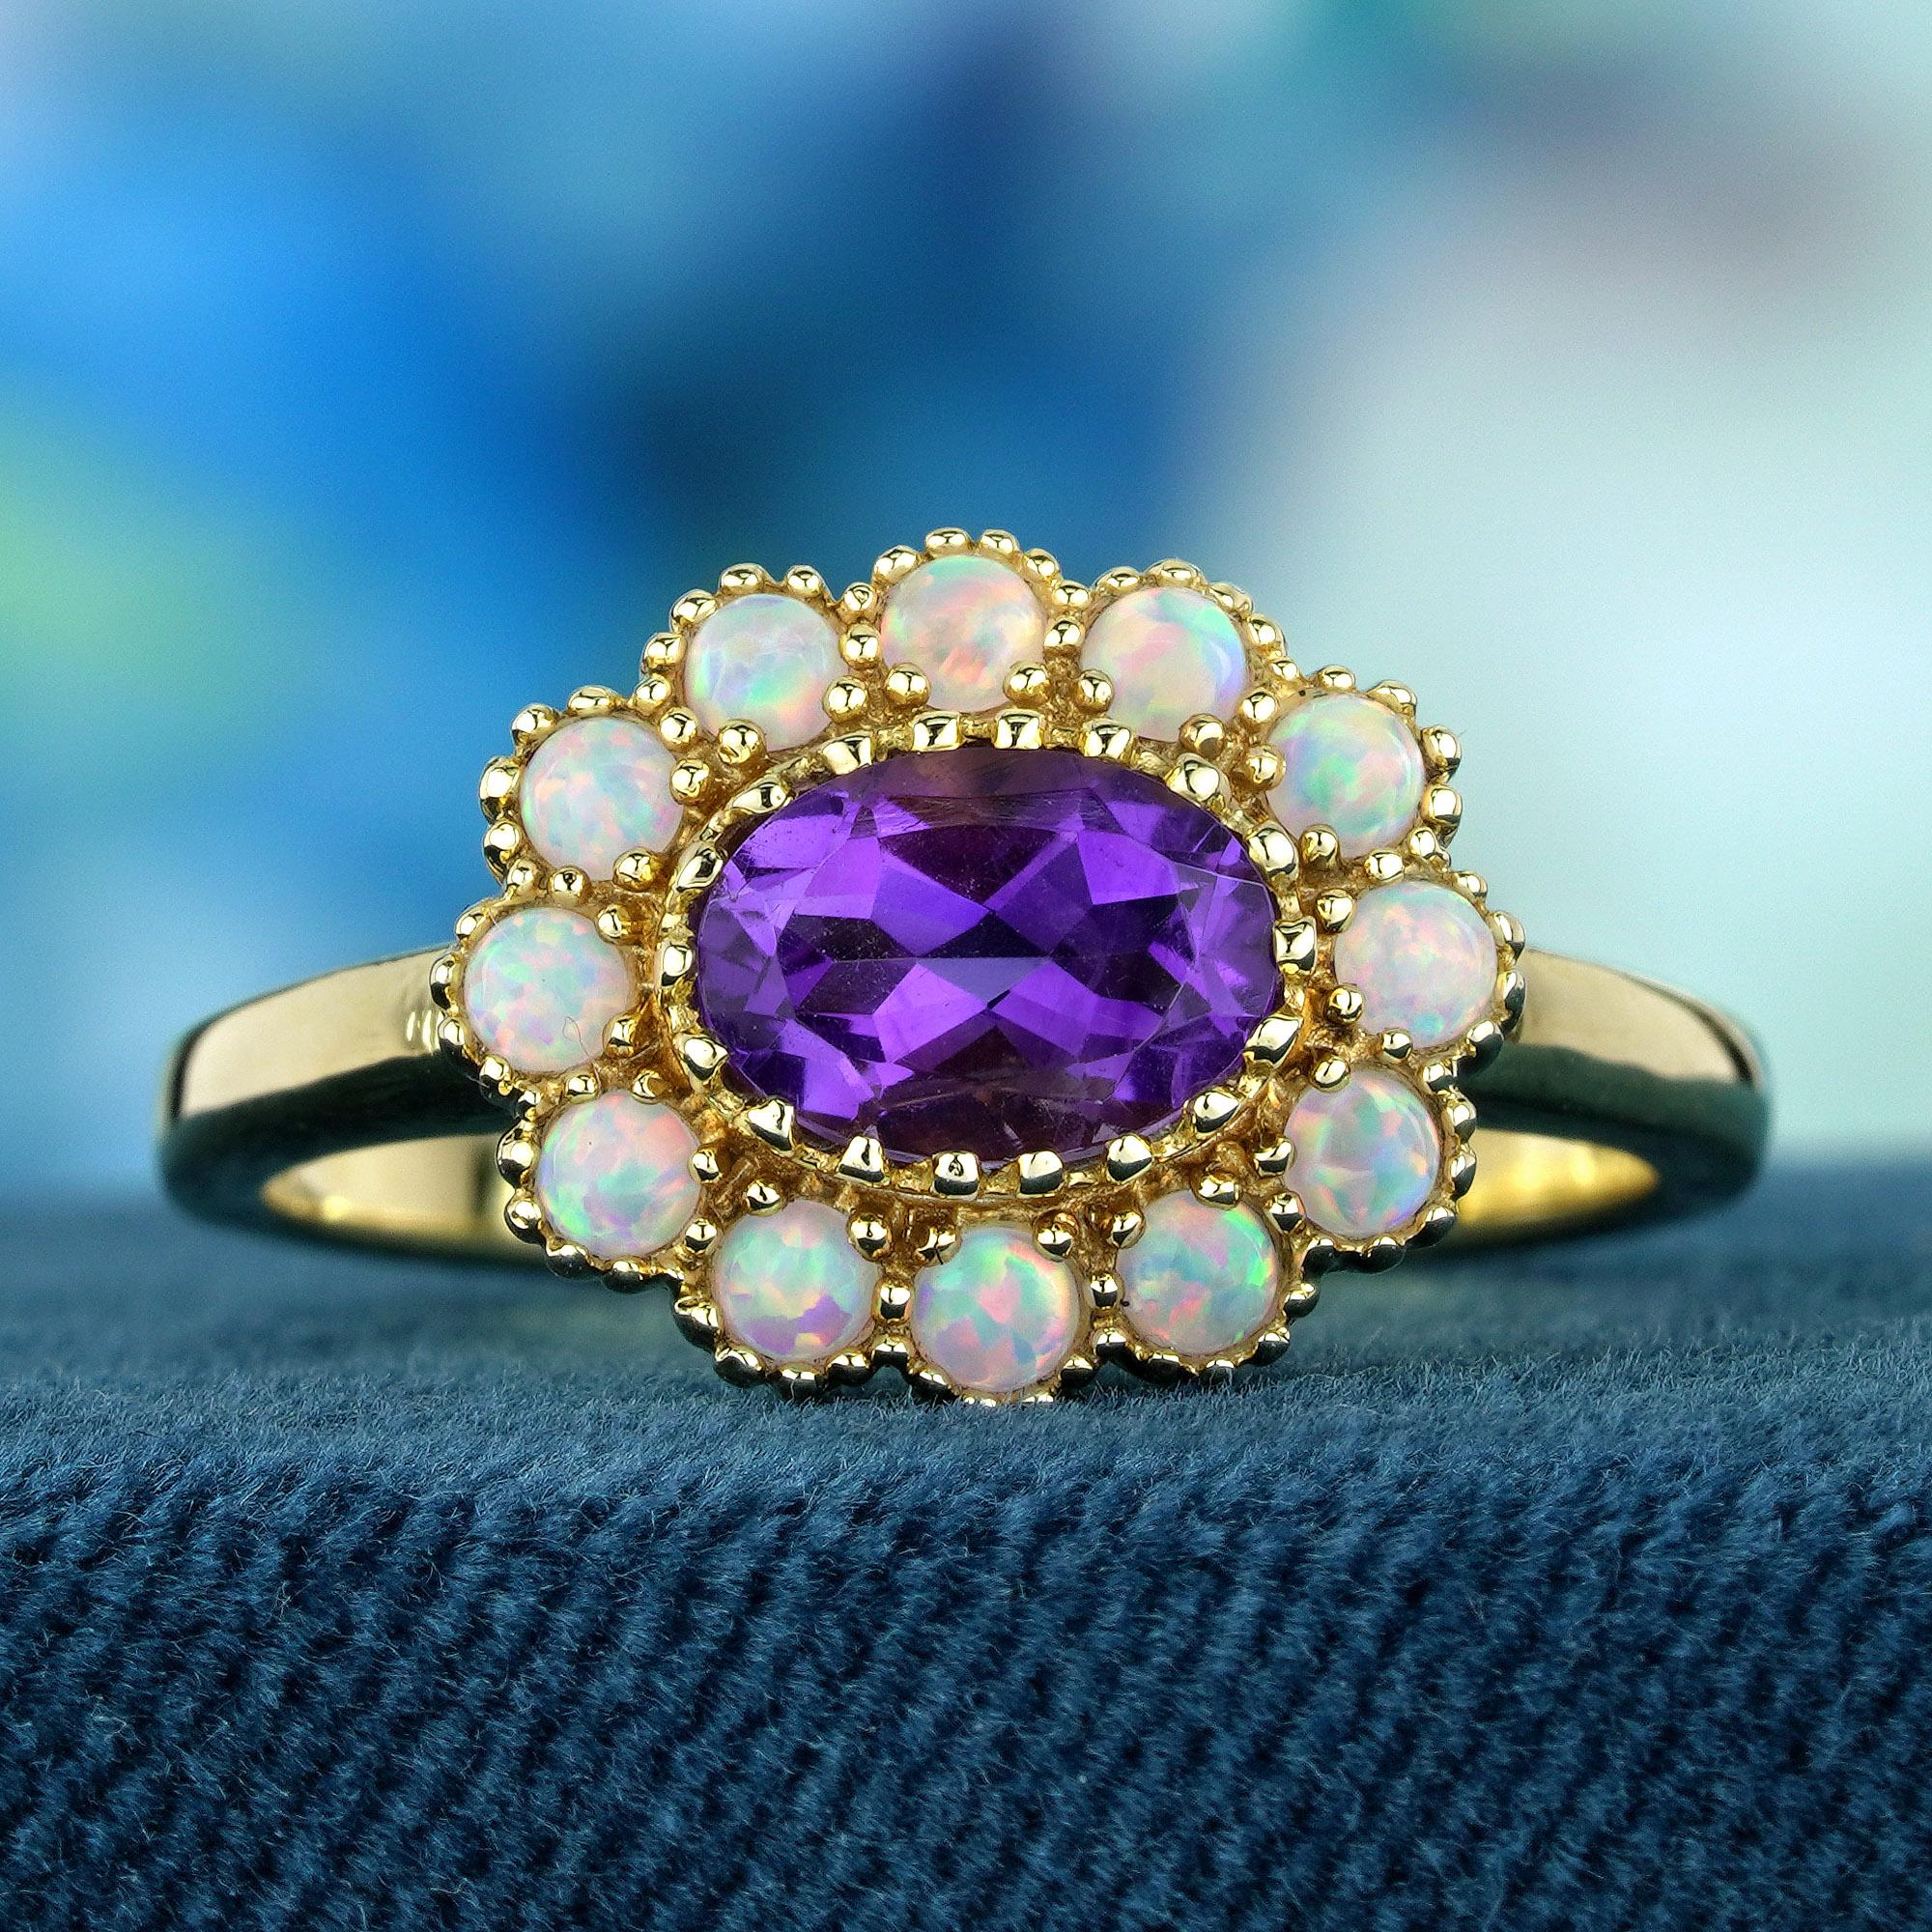 Der florale Ring im Vintage-Stil präsentiert in seiner Mitte einen atemberaubenden ovalen Amethysten, der von runden Cabochon-Opalen umgeben ist, von denen jeder eine faszinierende weiße Farbe aufweist, die die Eleganz des Schmuckstücks